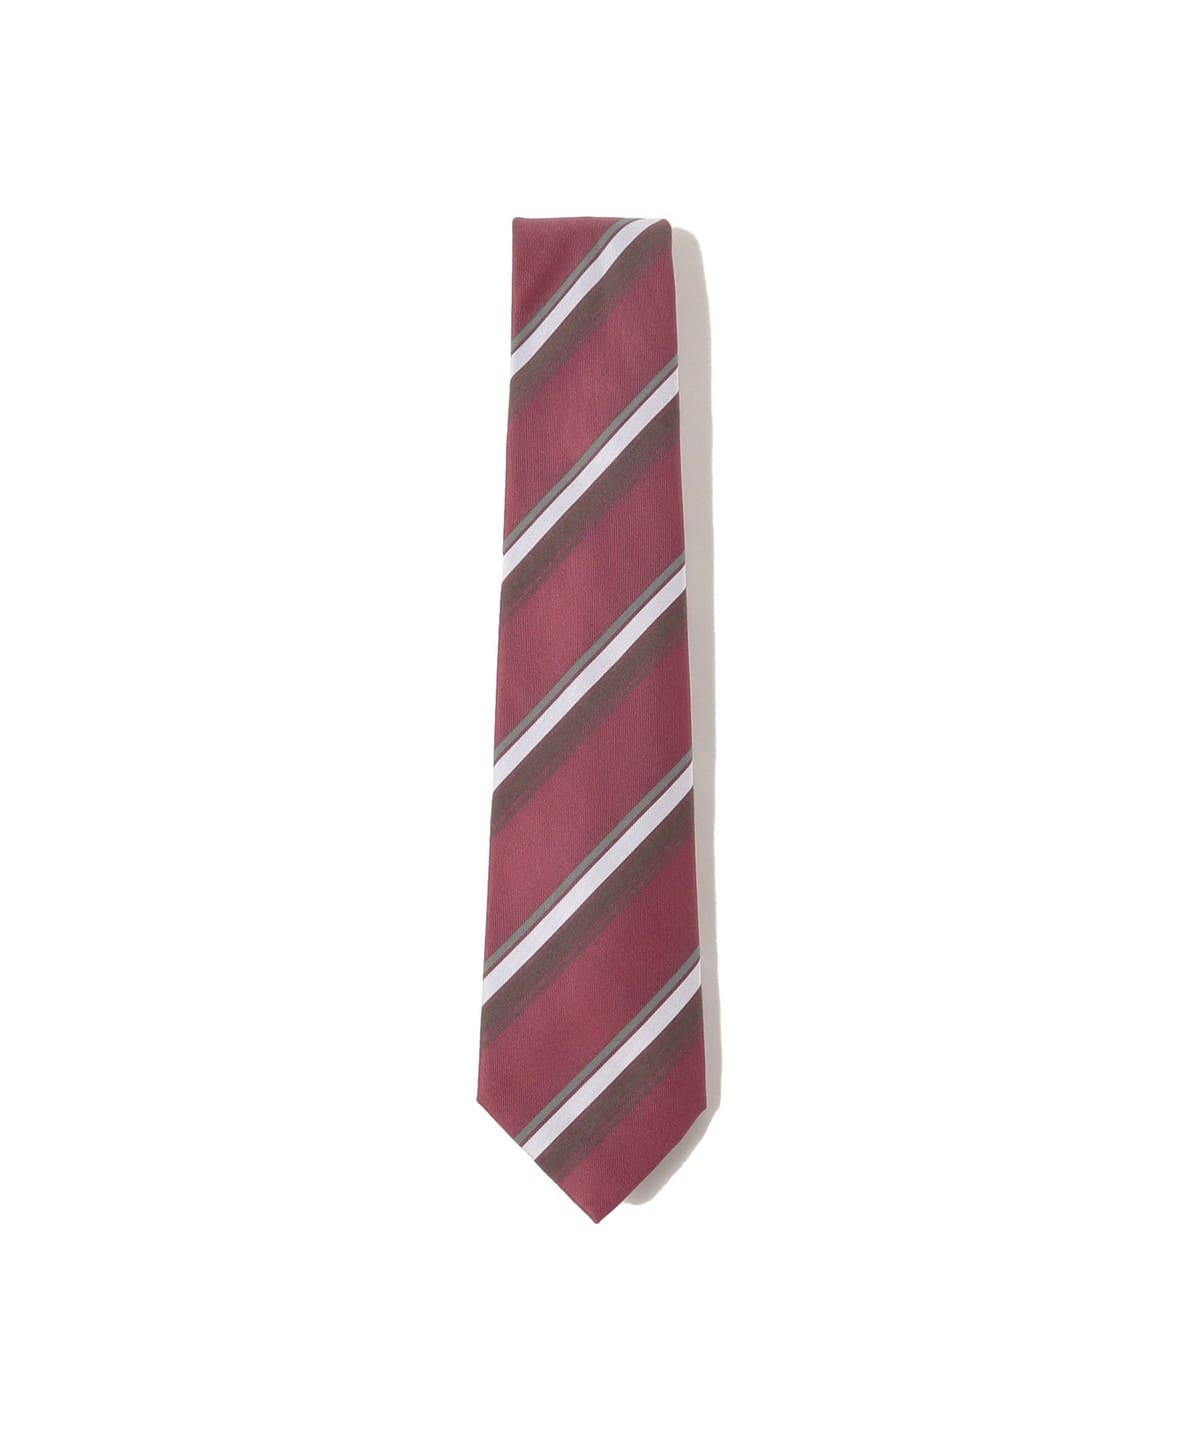 BEAMS F BEAMS FRANCO BASSI / Mixed fabric striped necktie (suit 